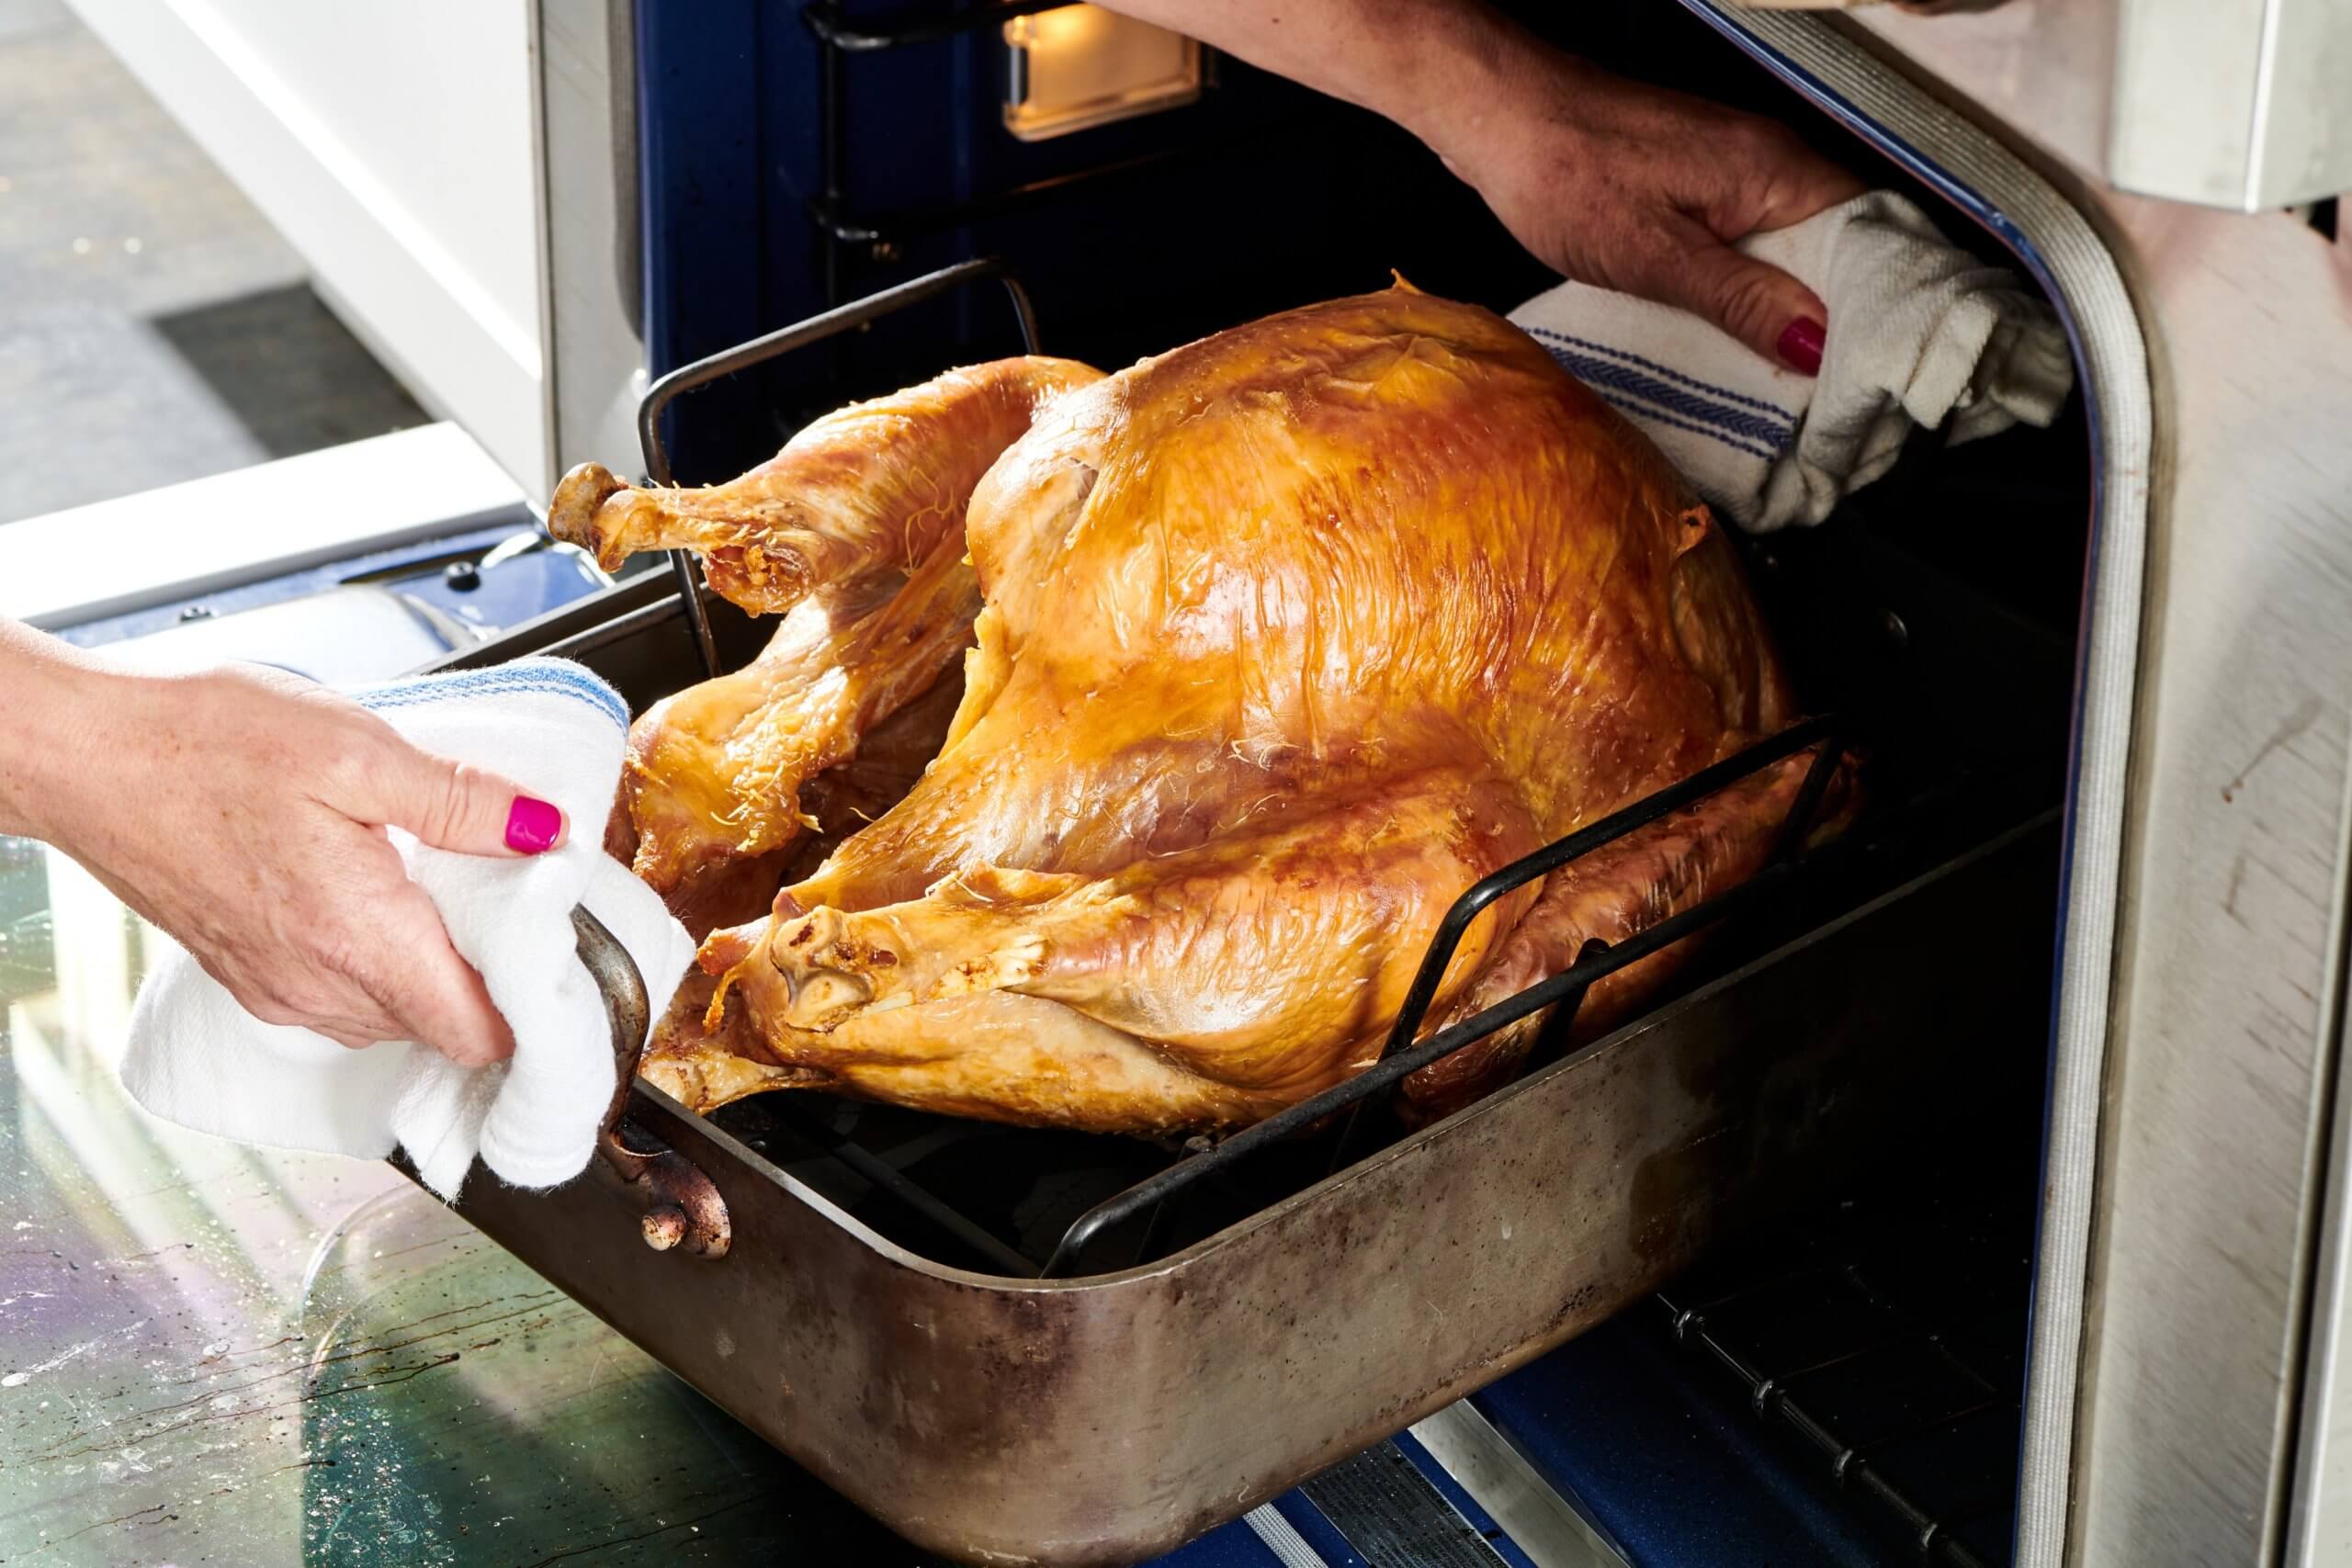 https://www.eatturkey.org/wp-content/uploads/2021/12/roast-turkey-oven-scaled.jpg